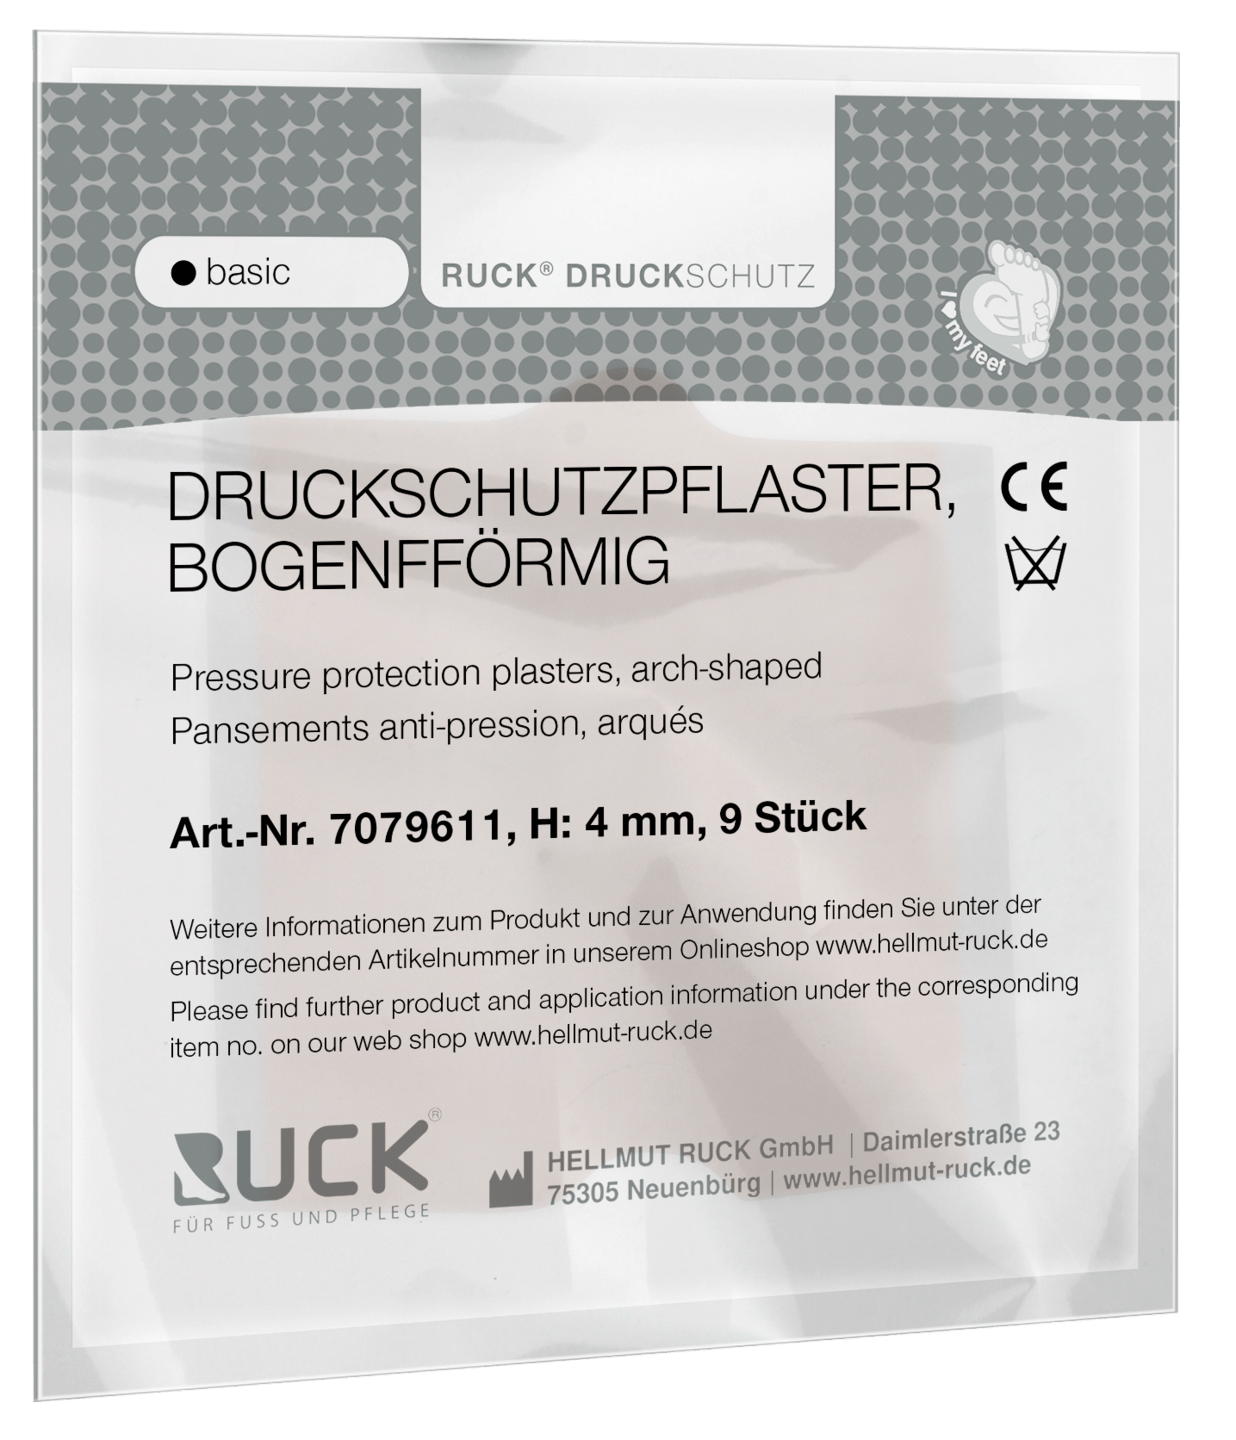 RUCK DRUCKSCHUTZ - Druckschutzpflaster, bogenförmig